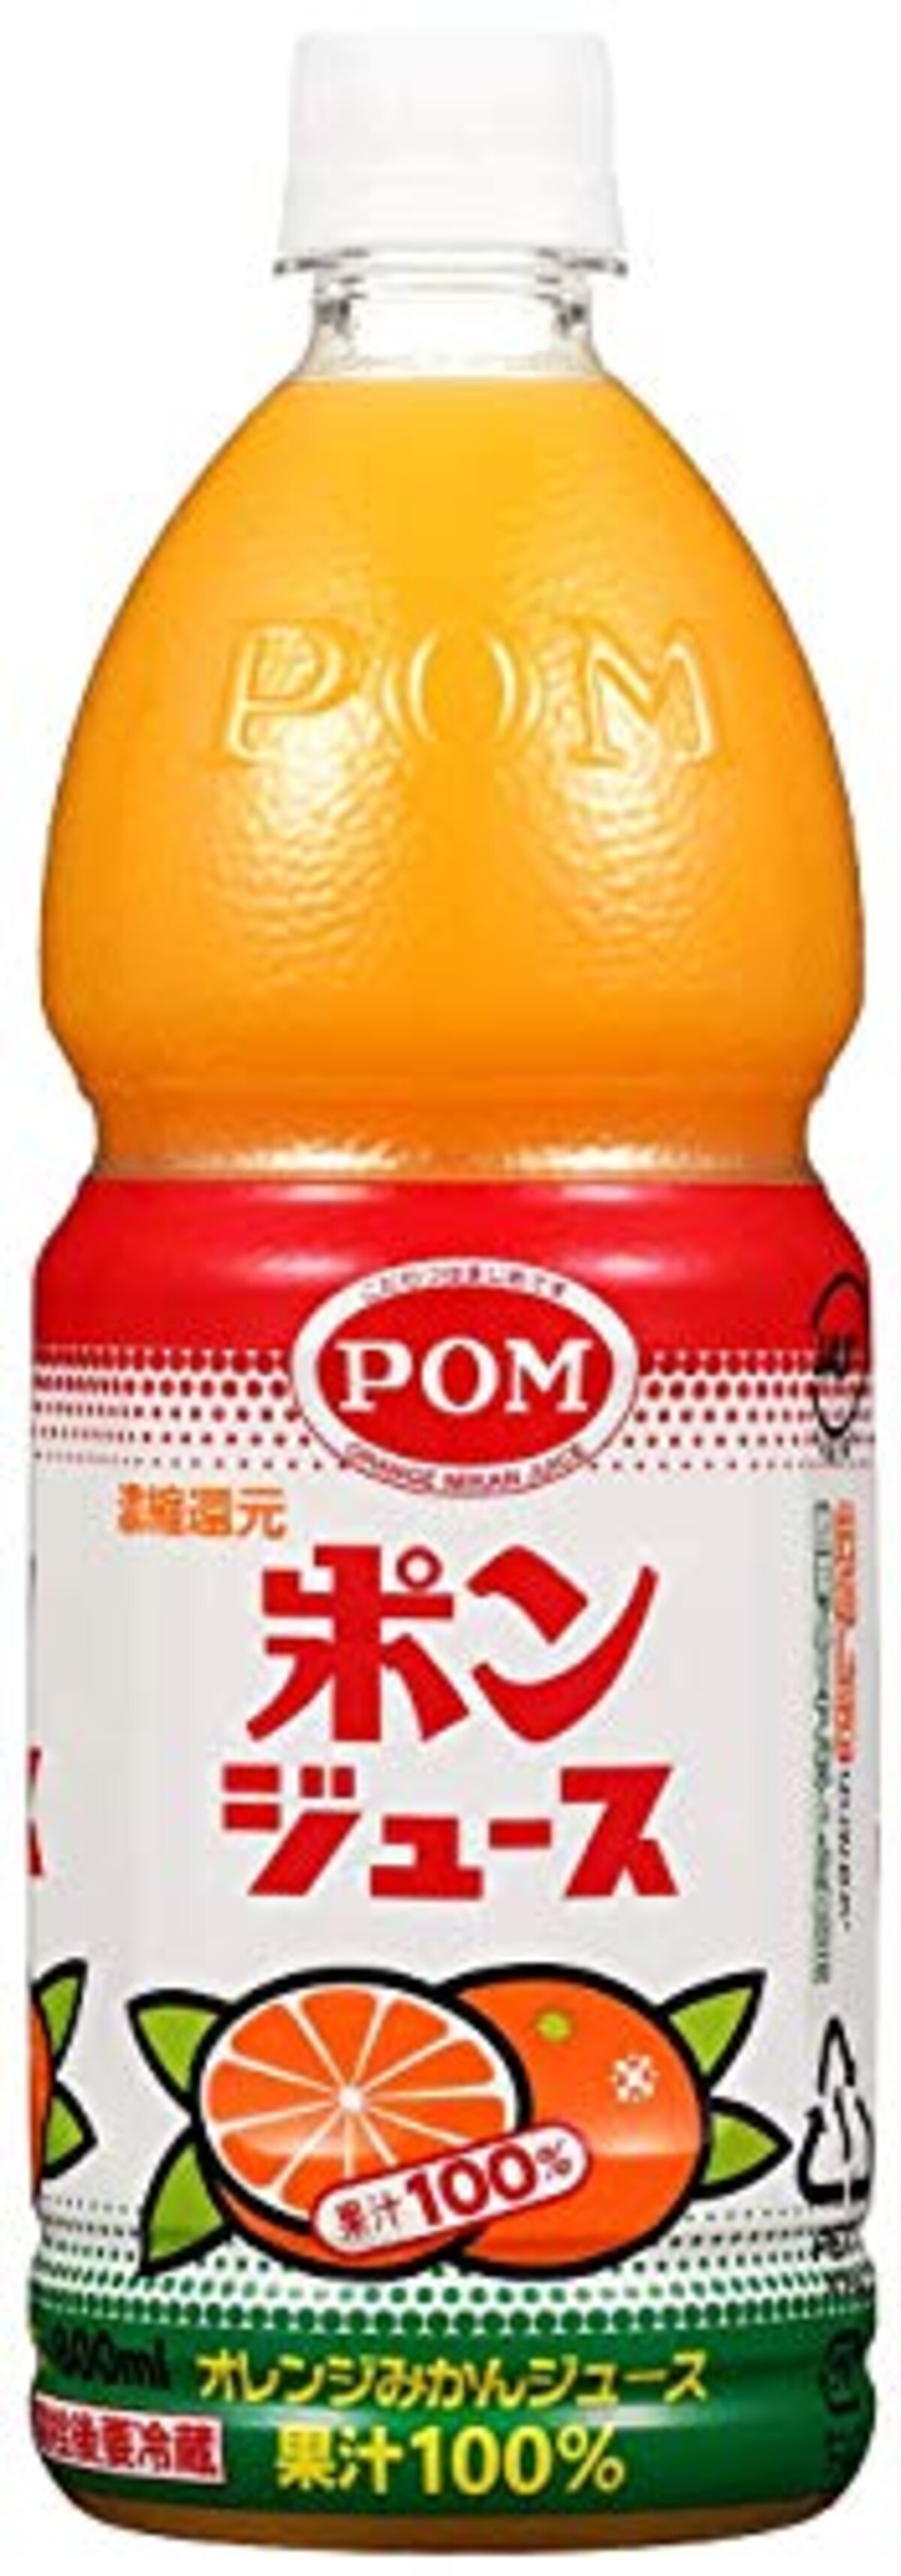  えひめ飲料 POM(ポン) ポンジュース  800ml 12本画像2 